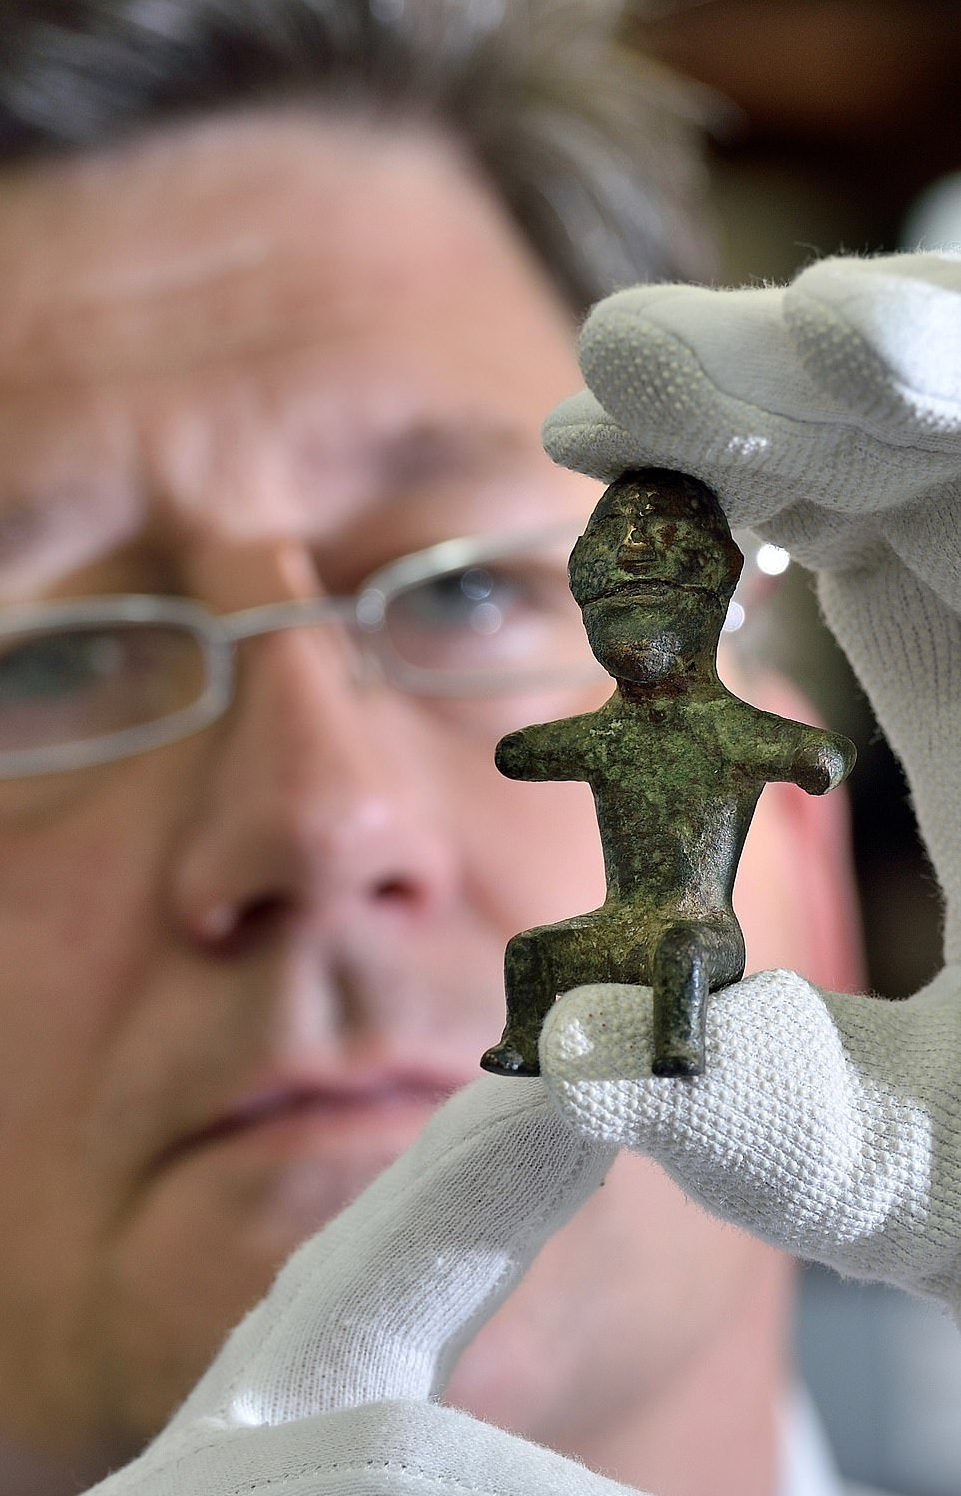 Вважається, що це статуетка німецького бога, їй майже 1800 років. На думку археологів, фігура, ймовірно, була священним предметом і була похована разом зі своїм власником.